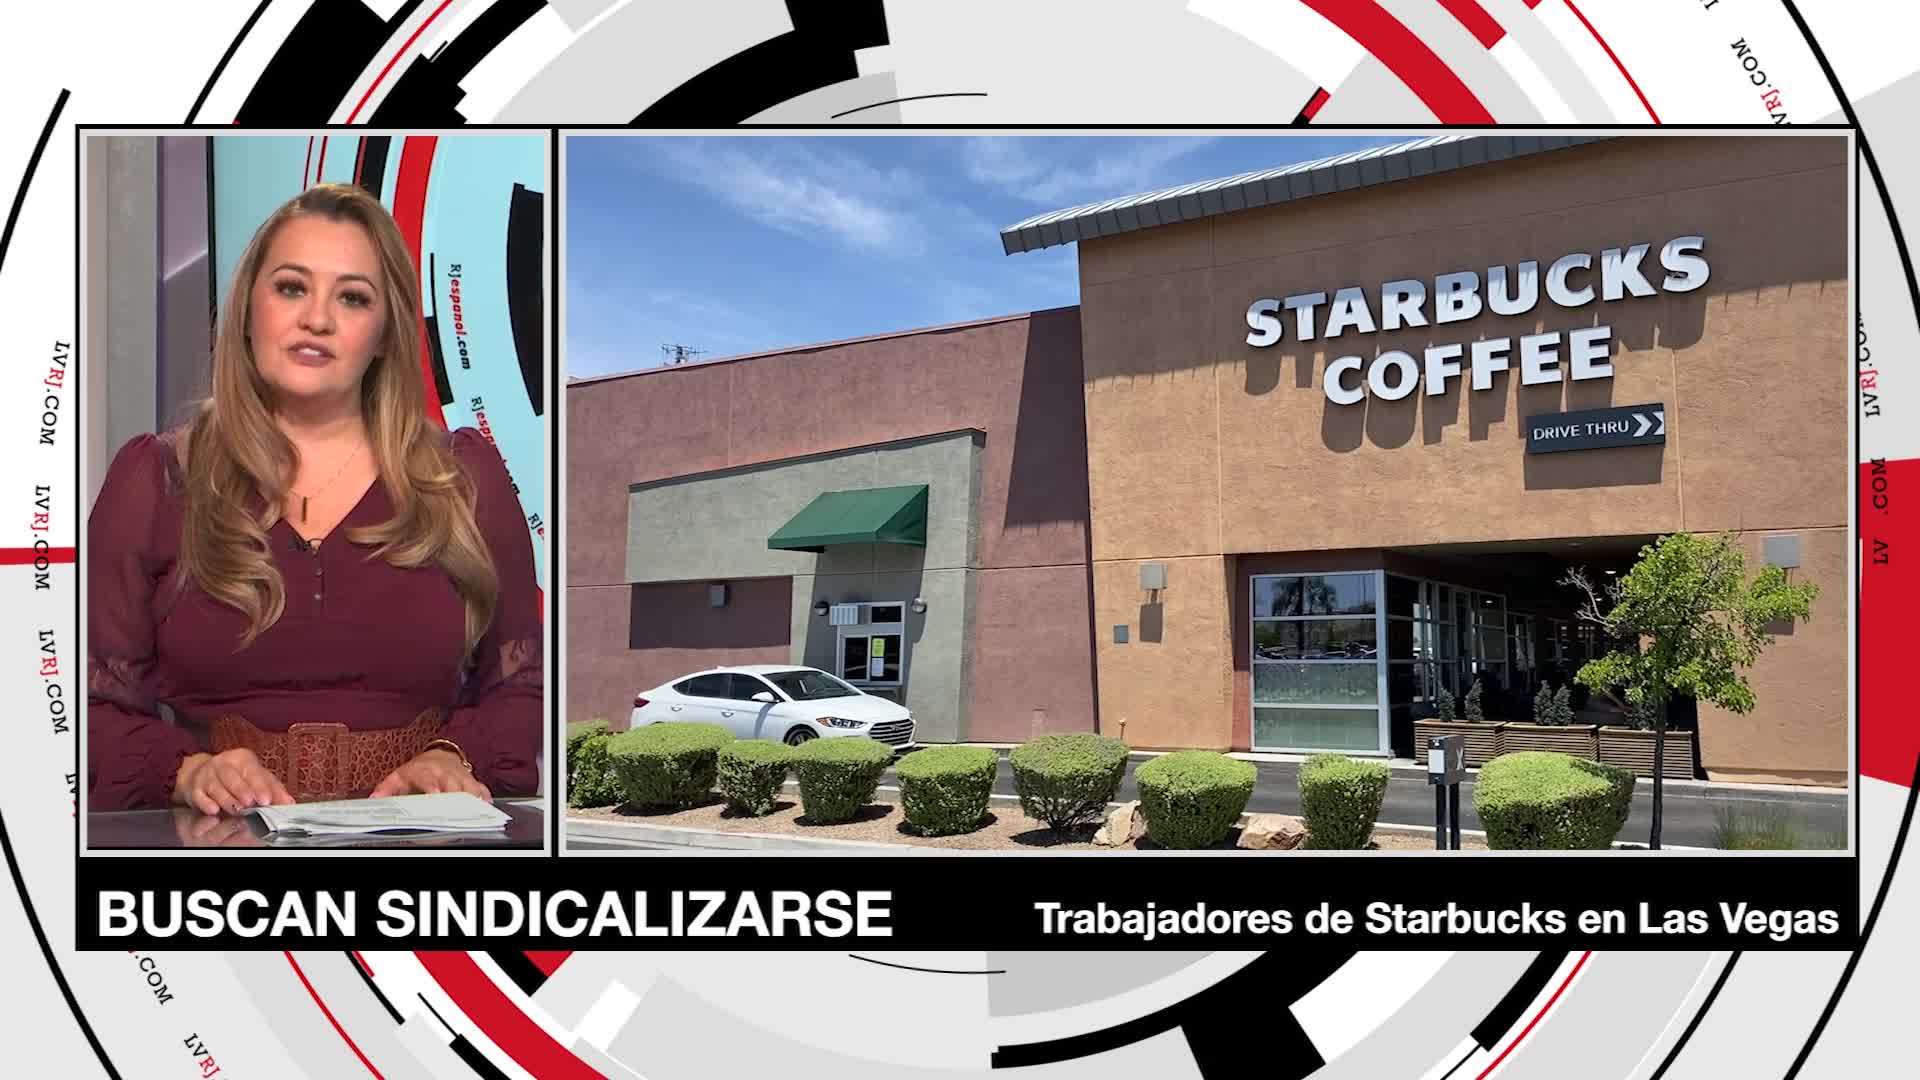 Trabajadores de Starbucks de Las Vegas buscan sindicalizarse